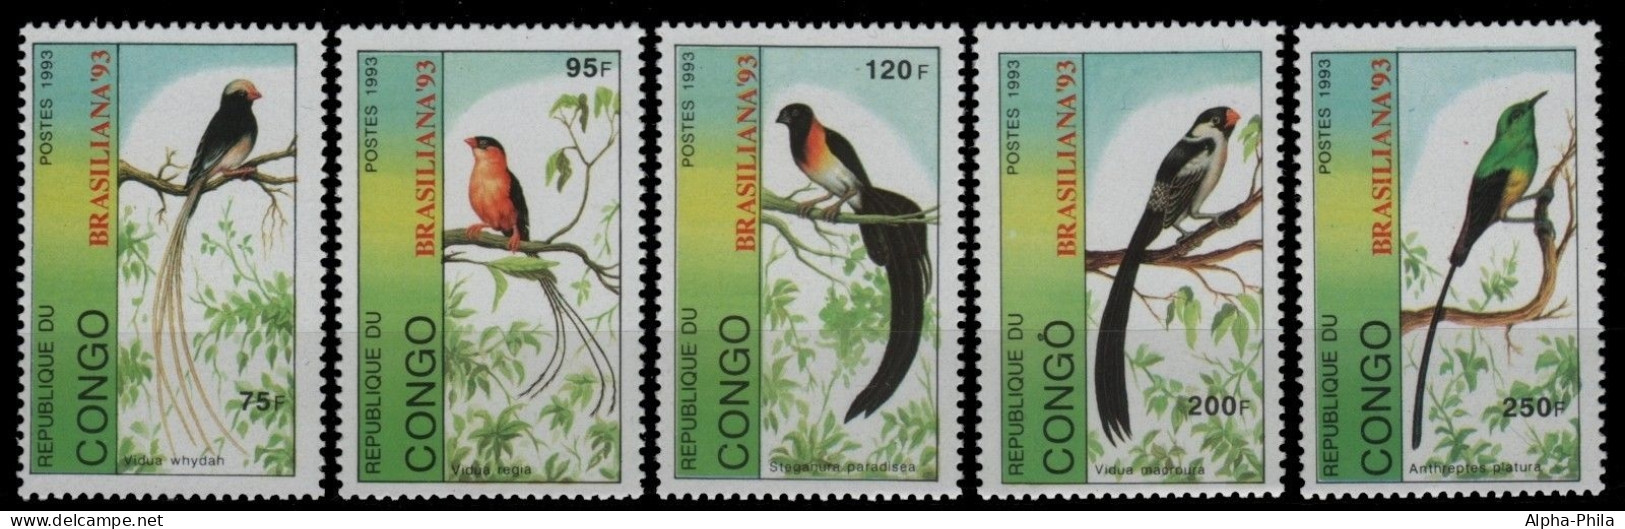 Kongo-Brazzaville 1993 - Mi-Nr. 1392-1396 ** - MNH - Vögel / Birds - Neufs